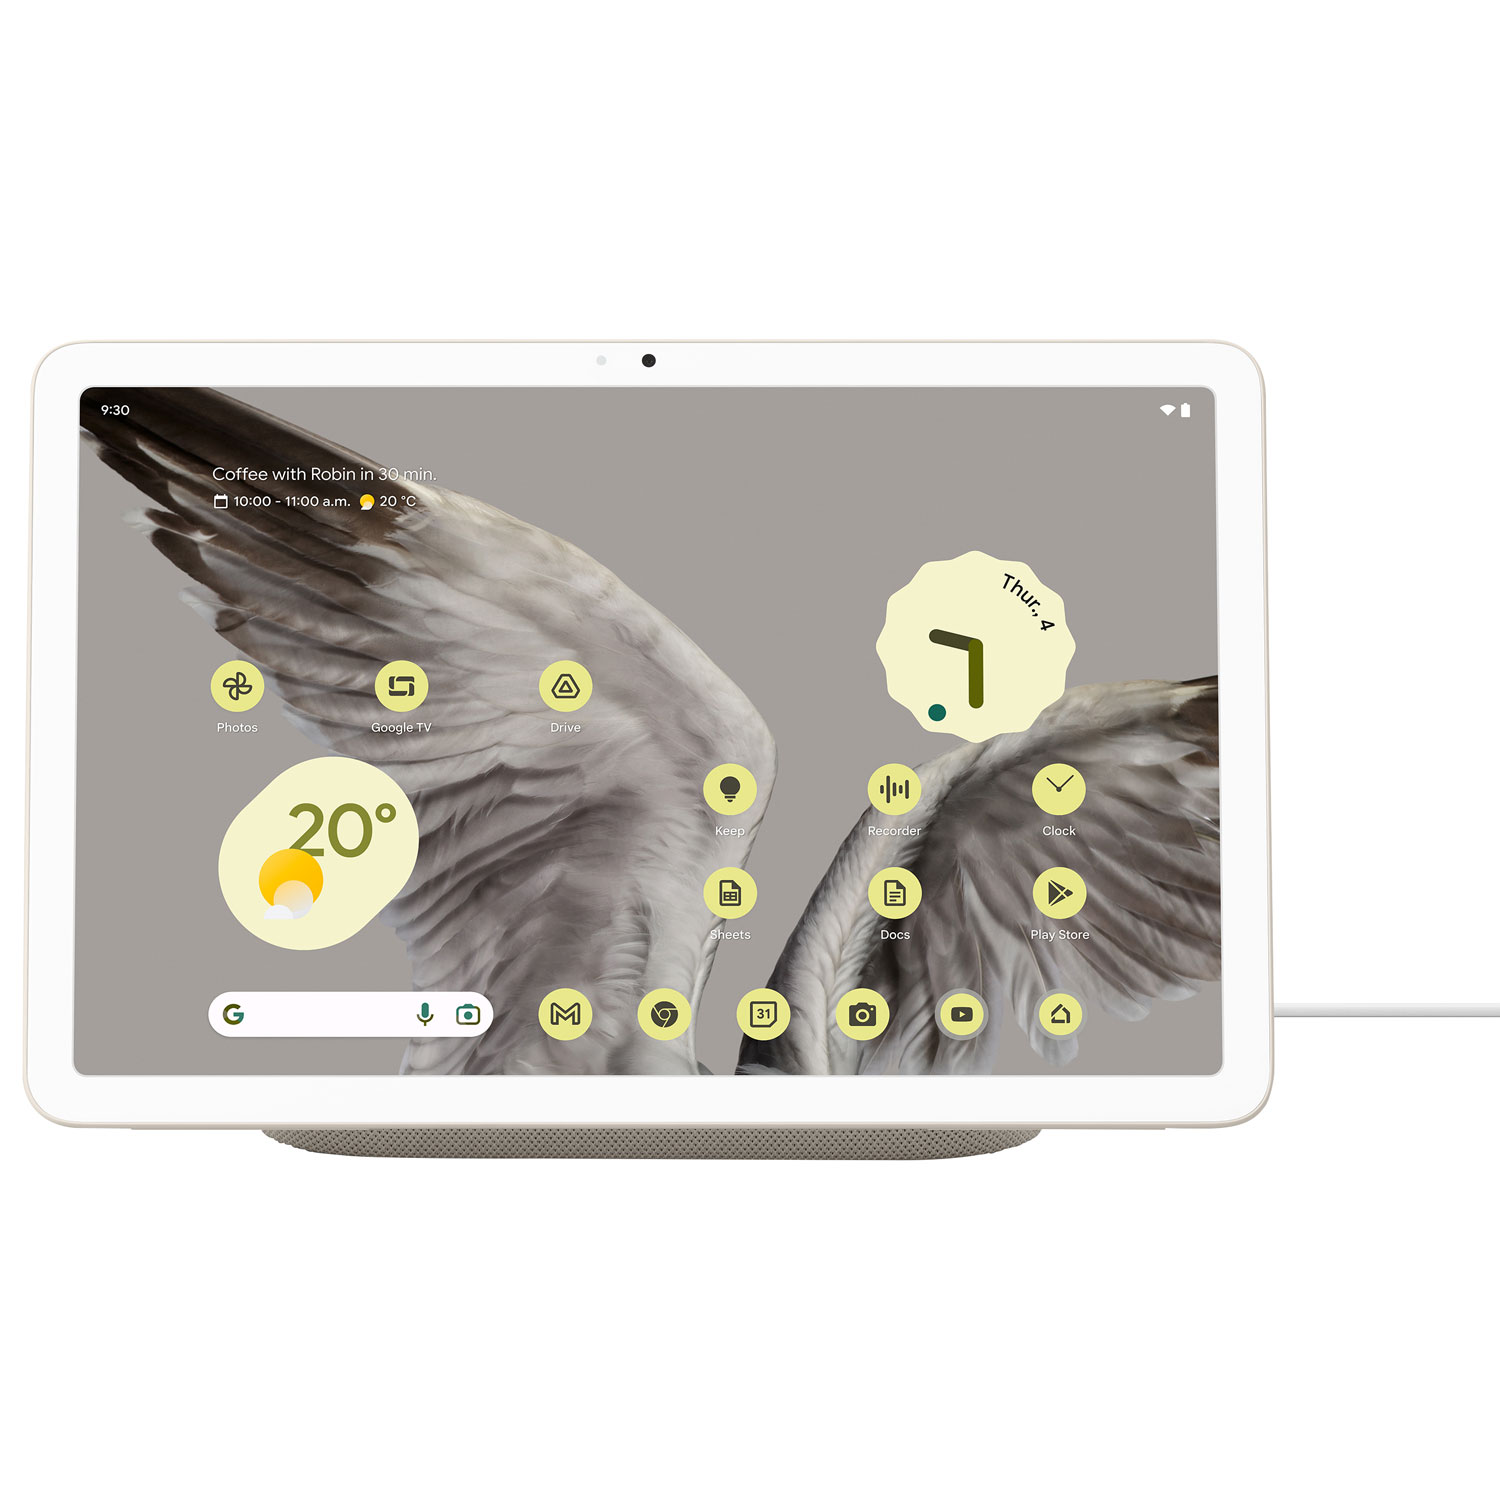 Google Pixel 10.95" 128GB Tablet with Charging Speaker Dock - Porcelain